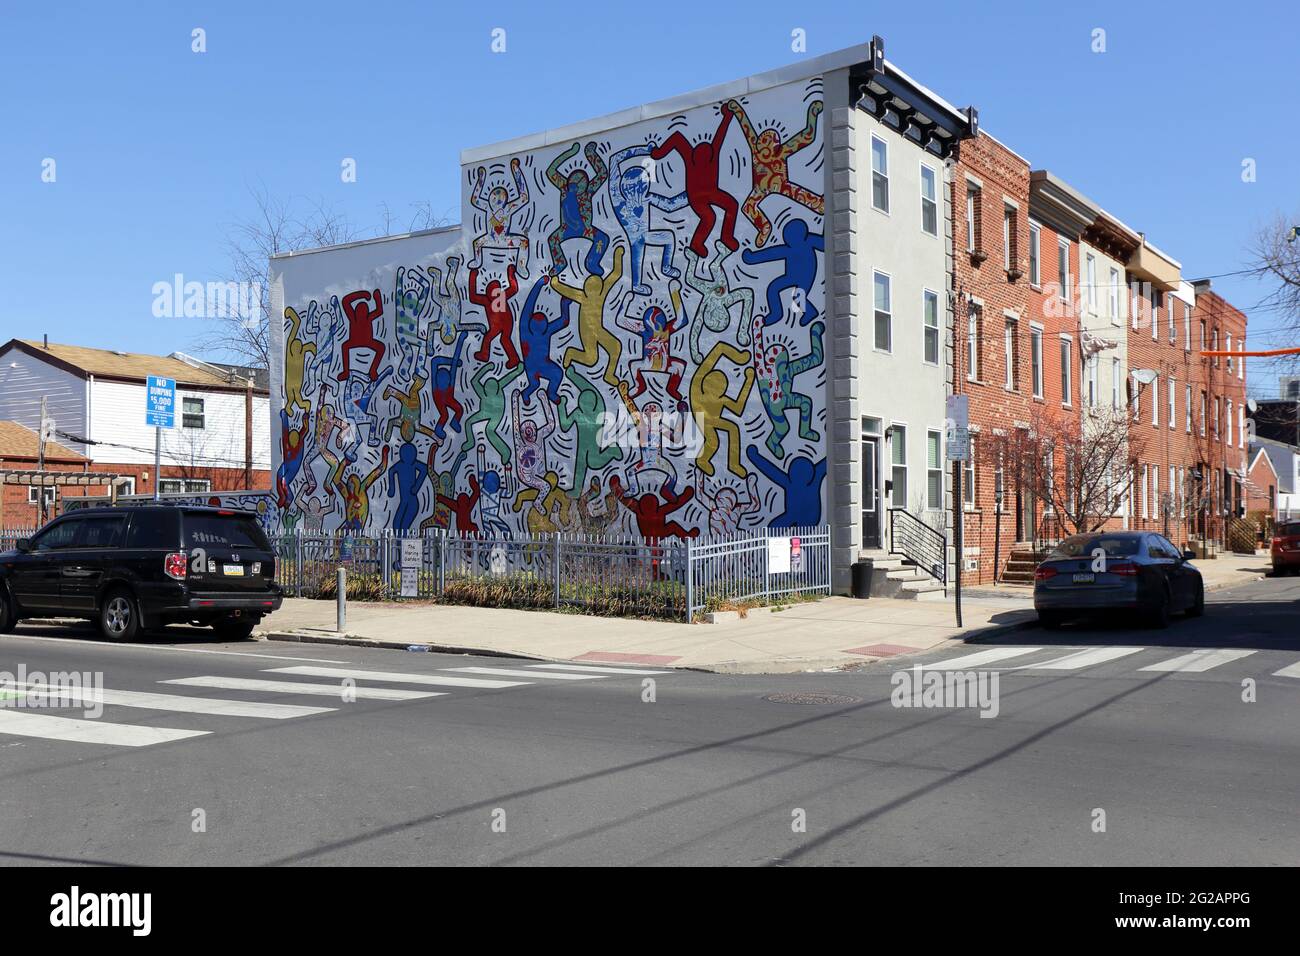 Ein Gemeinschaftsgarten im Point Breeze-Viertel von Philadelphia, PA, mit einem großen öffentlichen Wandgemälde an der Seite eines Gebäudes. Stockfoto